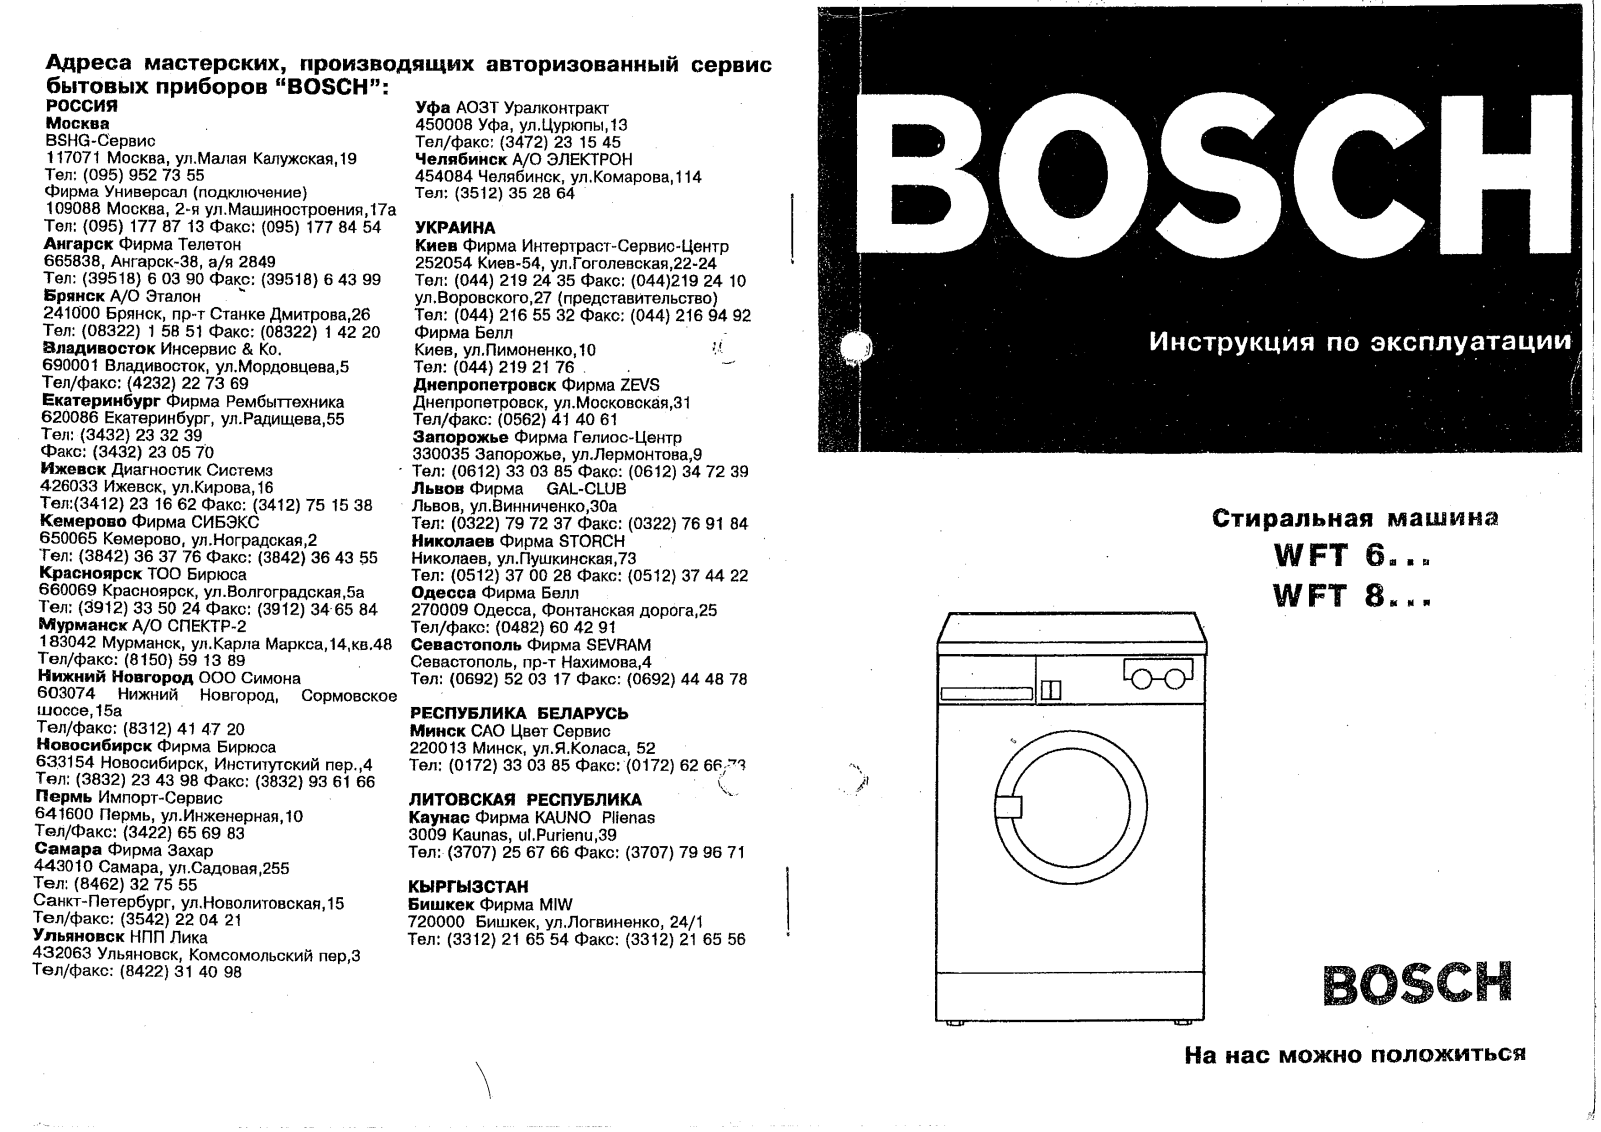 Bosch WFT 6010 User Manual